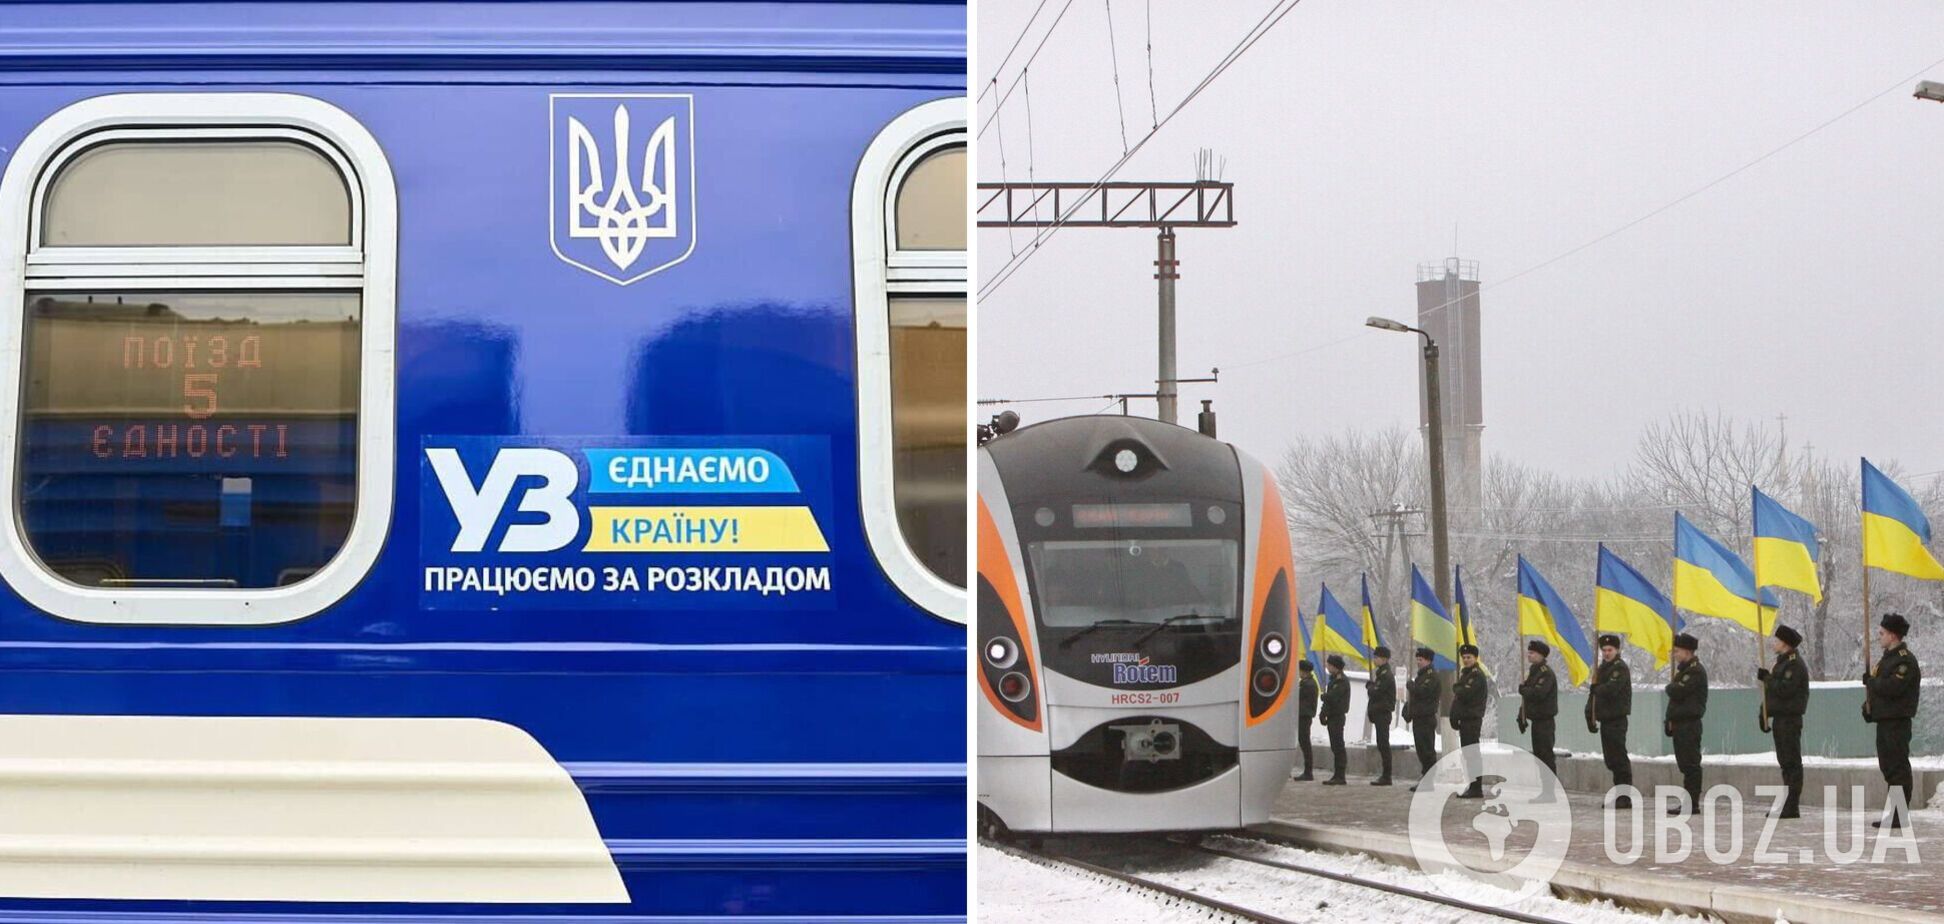 'Укрзалізниця' вдруге запускає 'Поїзд єднання': проїде 9 областей від Ужгорода до Краматорська